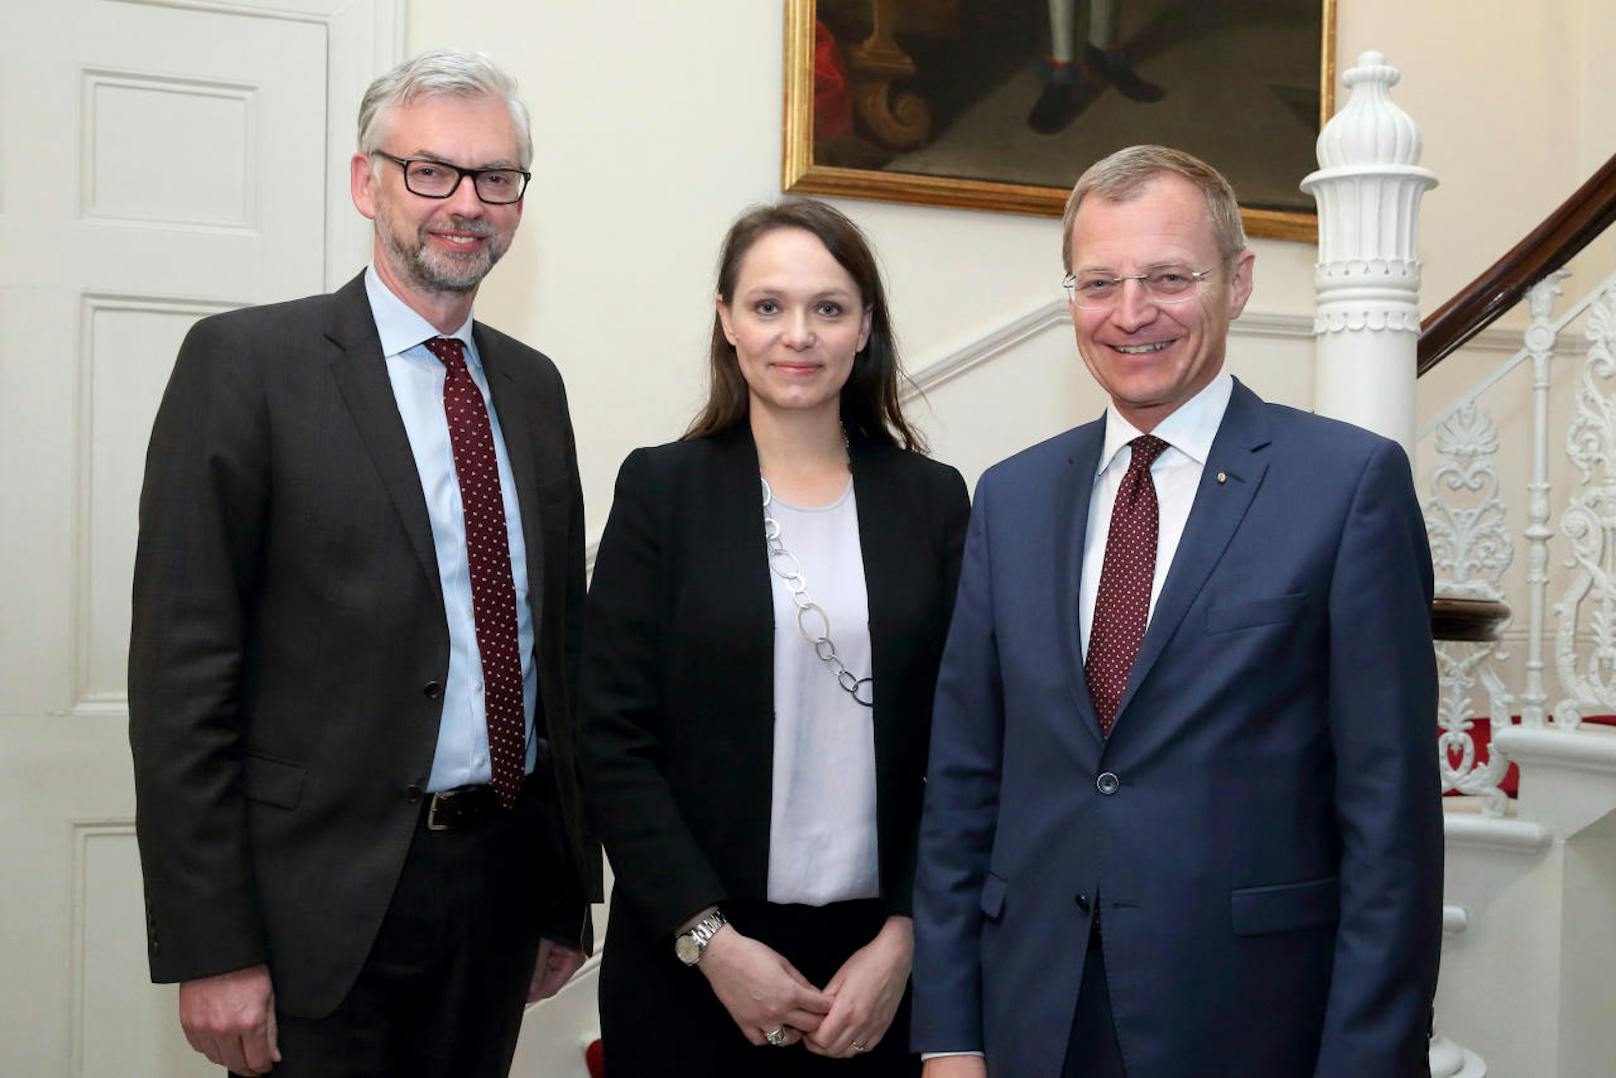 LH-Stv. Michael Strugl und Thomas Stelzer mit Chargé d'Affaires a.i. Katharina Kastner. Die gebürtige Linzerin leitet derzeit die Botschaft in London.